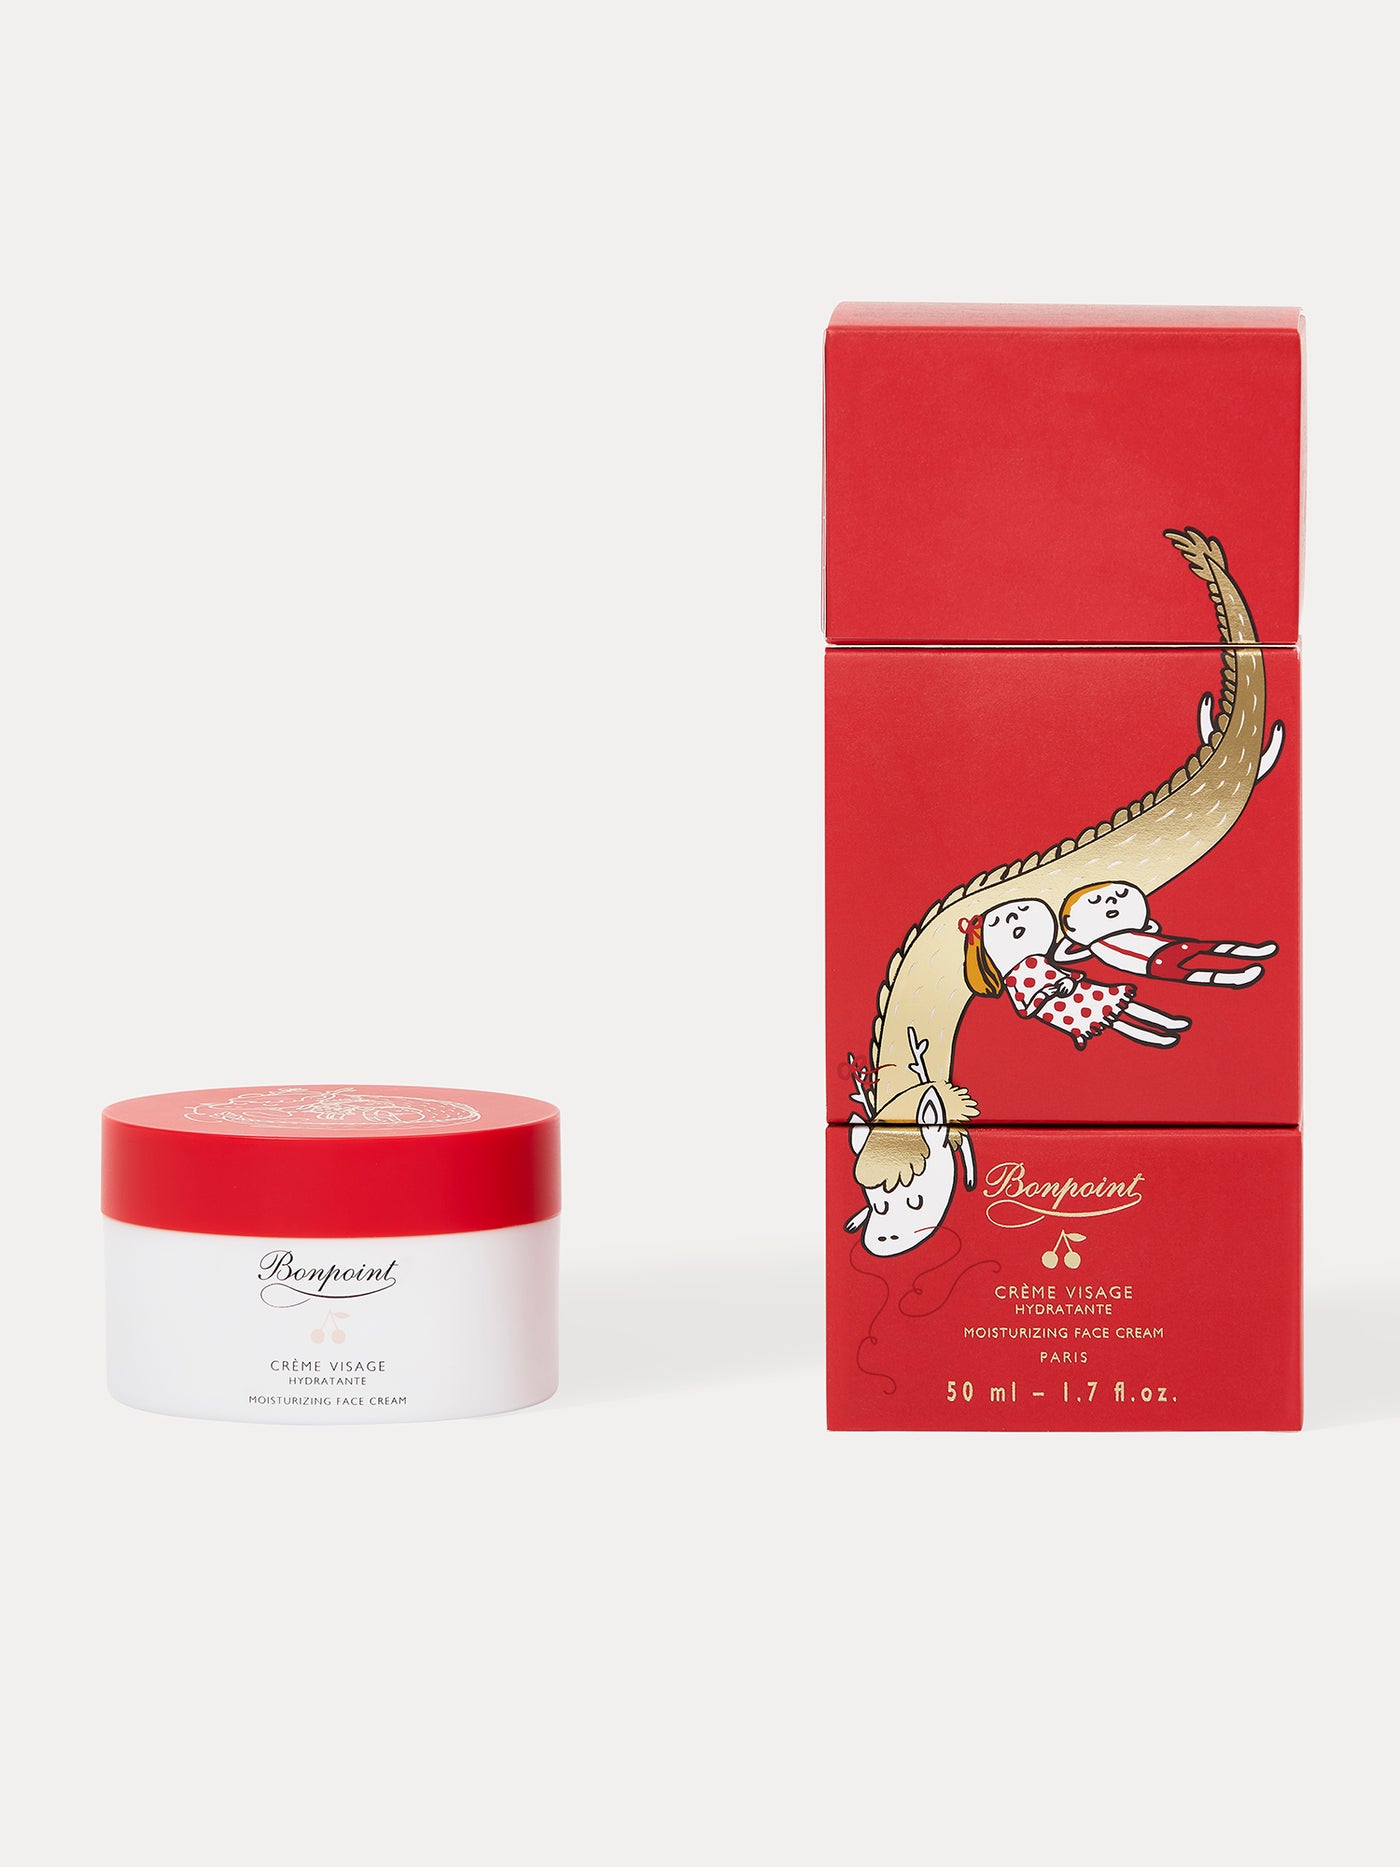 Crème Visage hydratante édition limitée "Lucky dragon" 50 ml